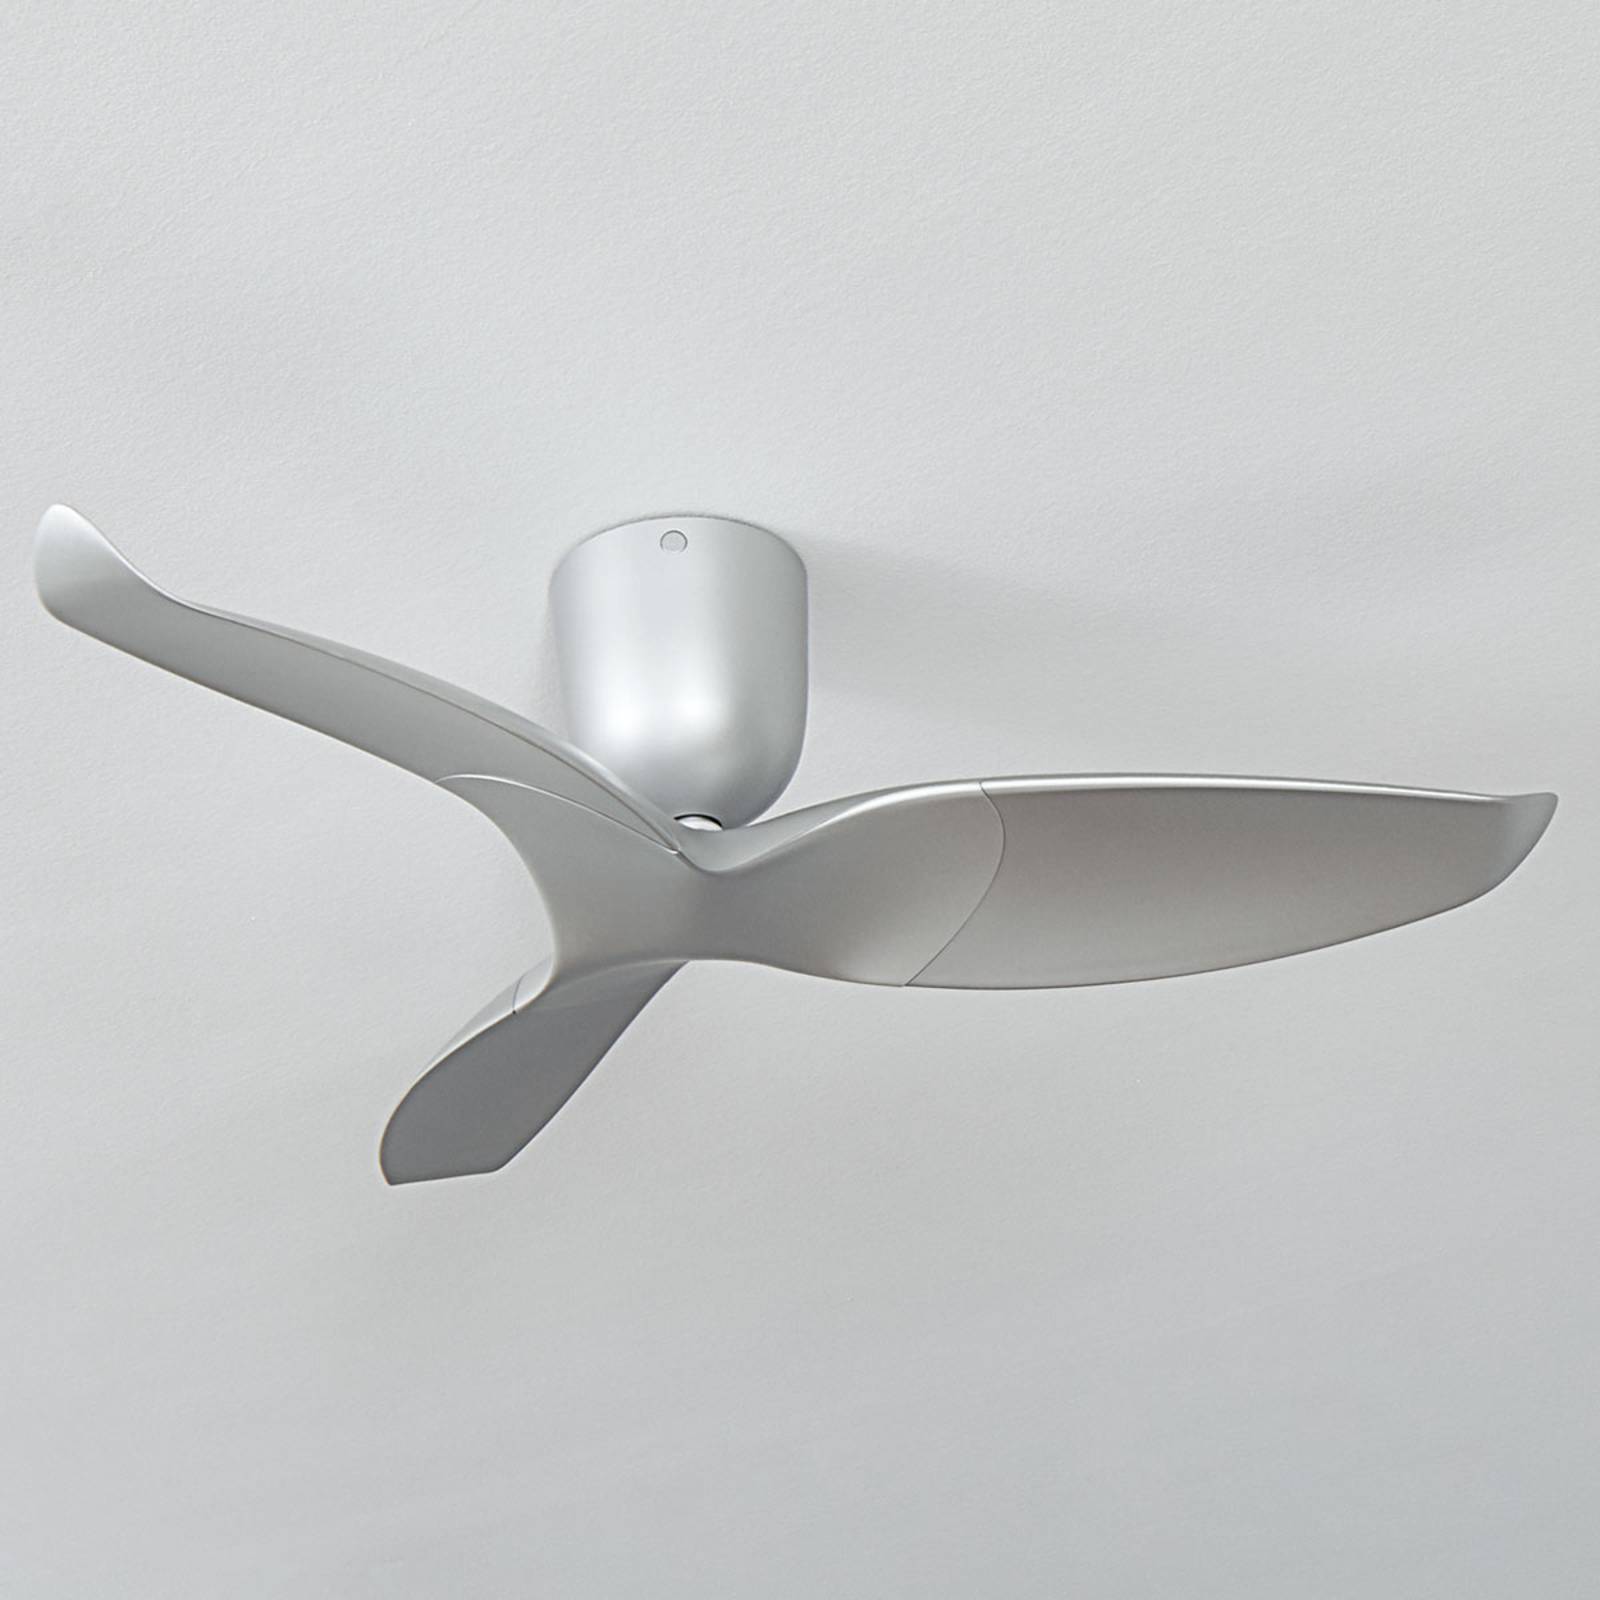 Image of Aeratron ventilateur plafond AE3+, 109 cm, argenté 4251096578508